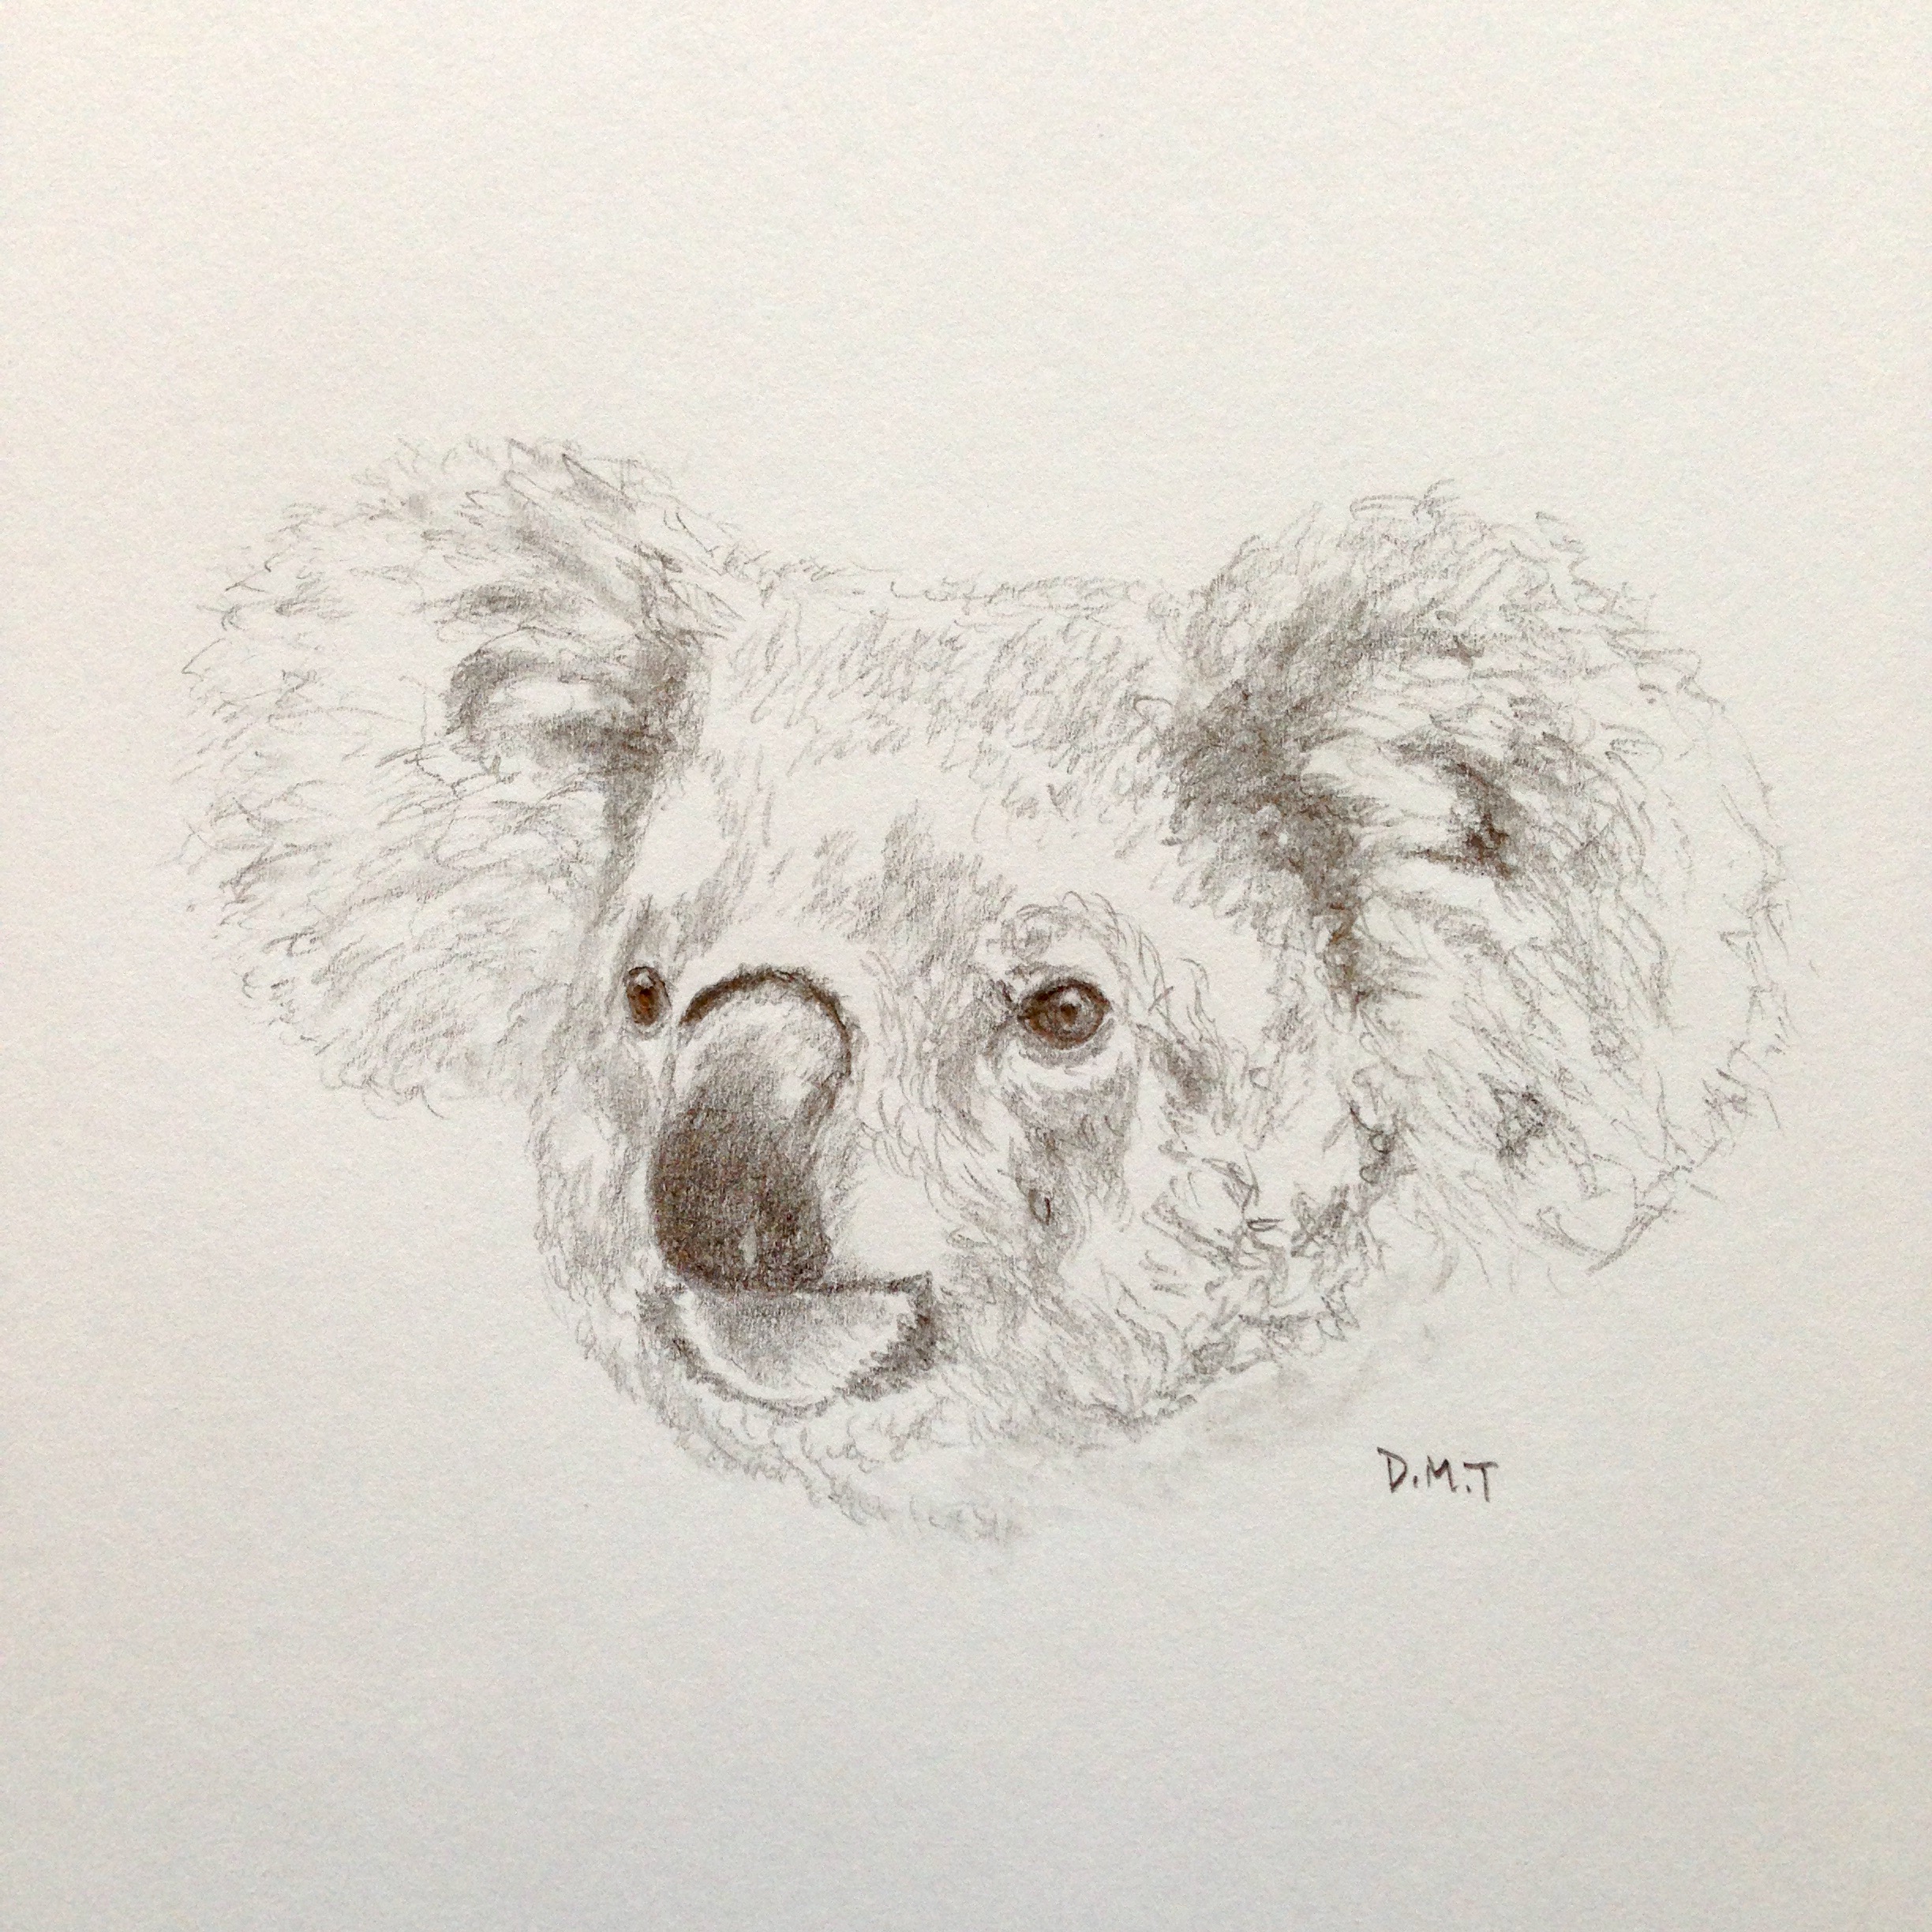 Pencil drawing of a koala